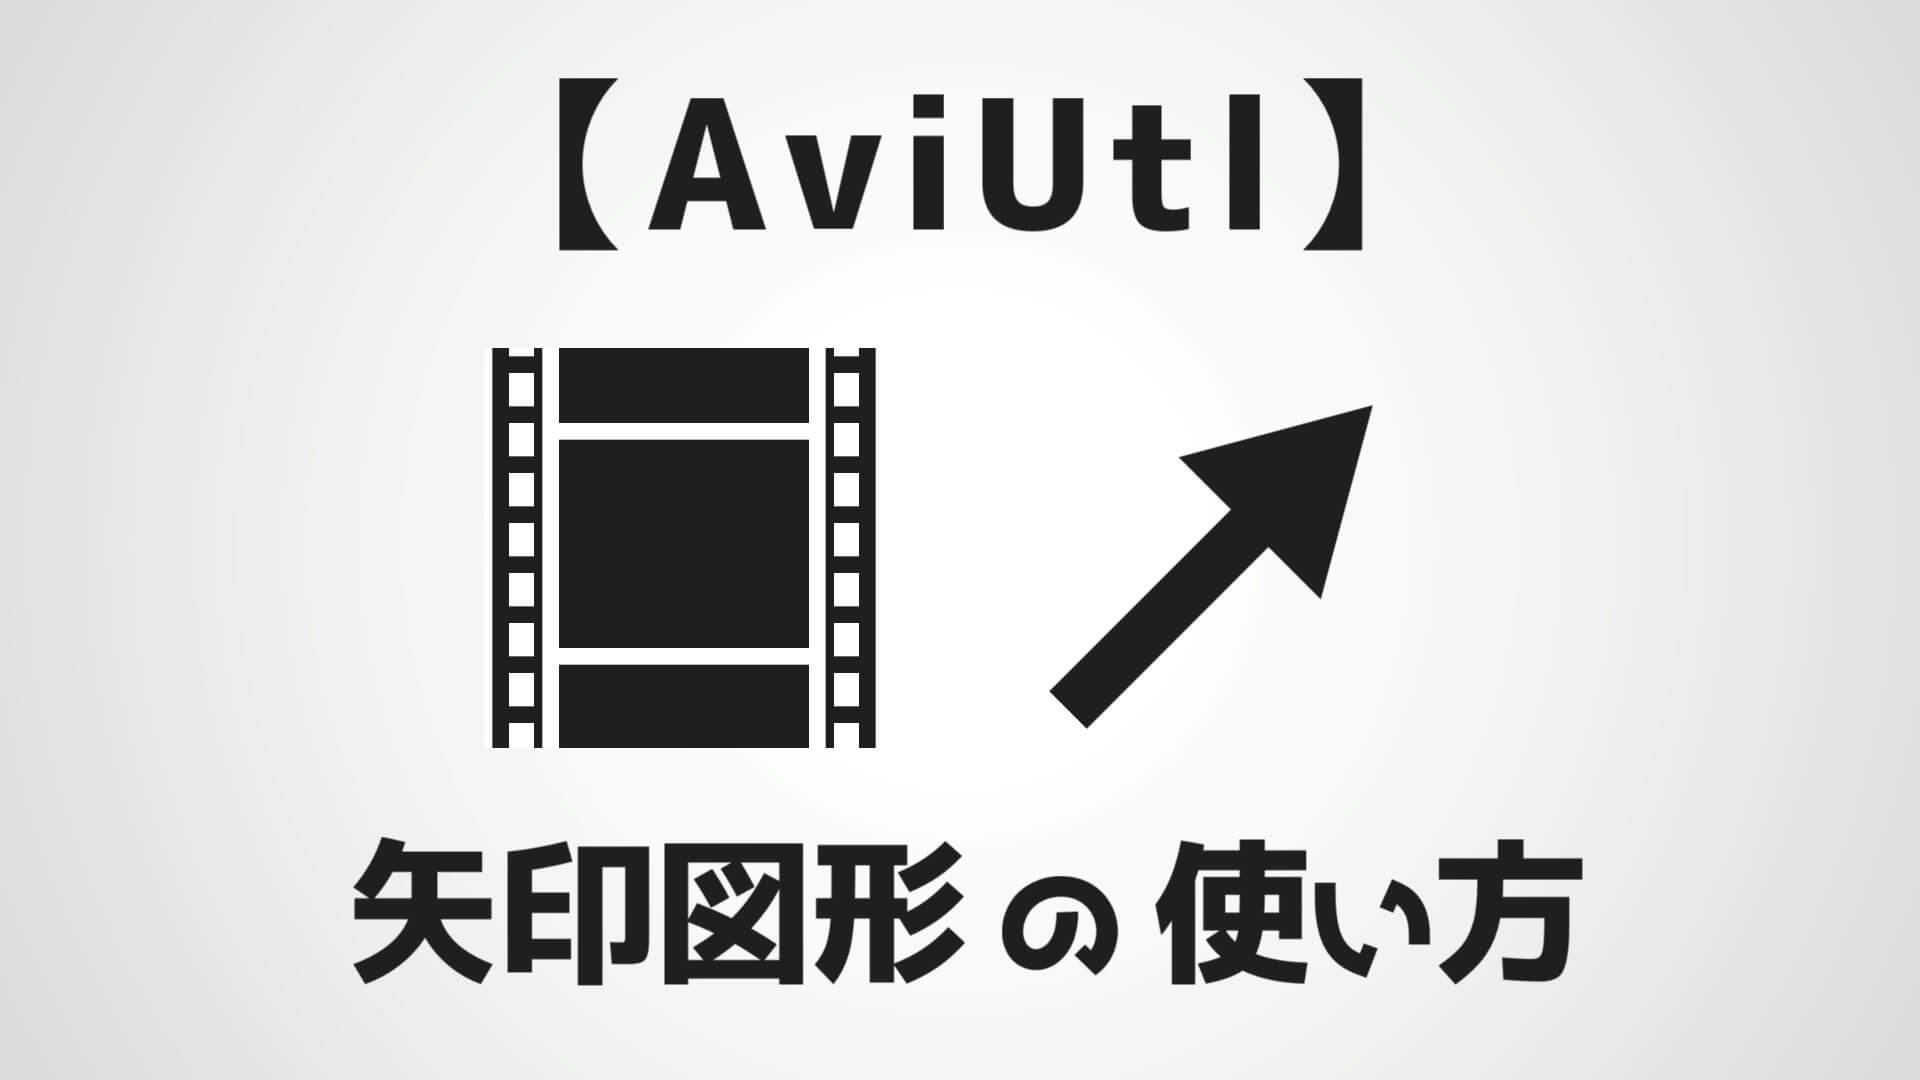 Aviutl 矢印オブジェクトの使い方を解説 伸縮自在で曲線も対応